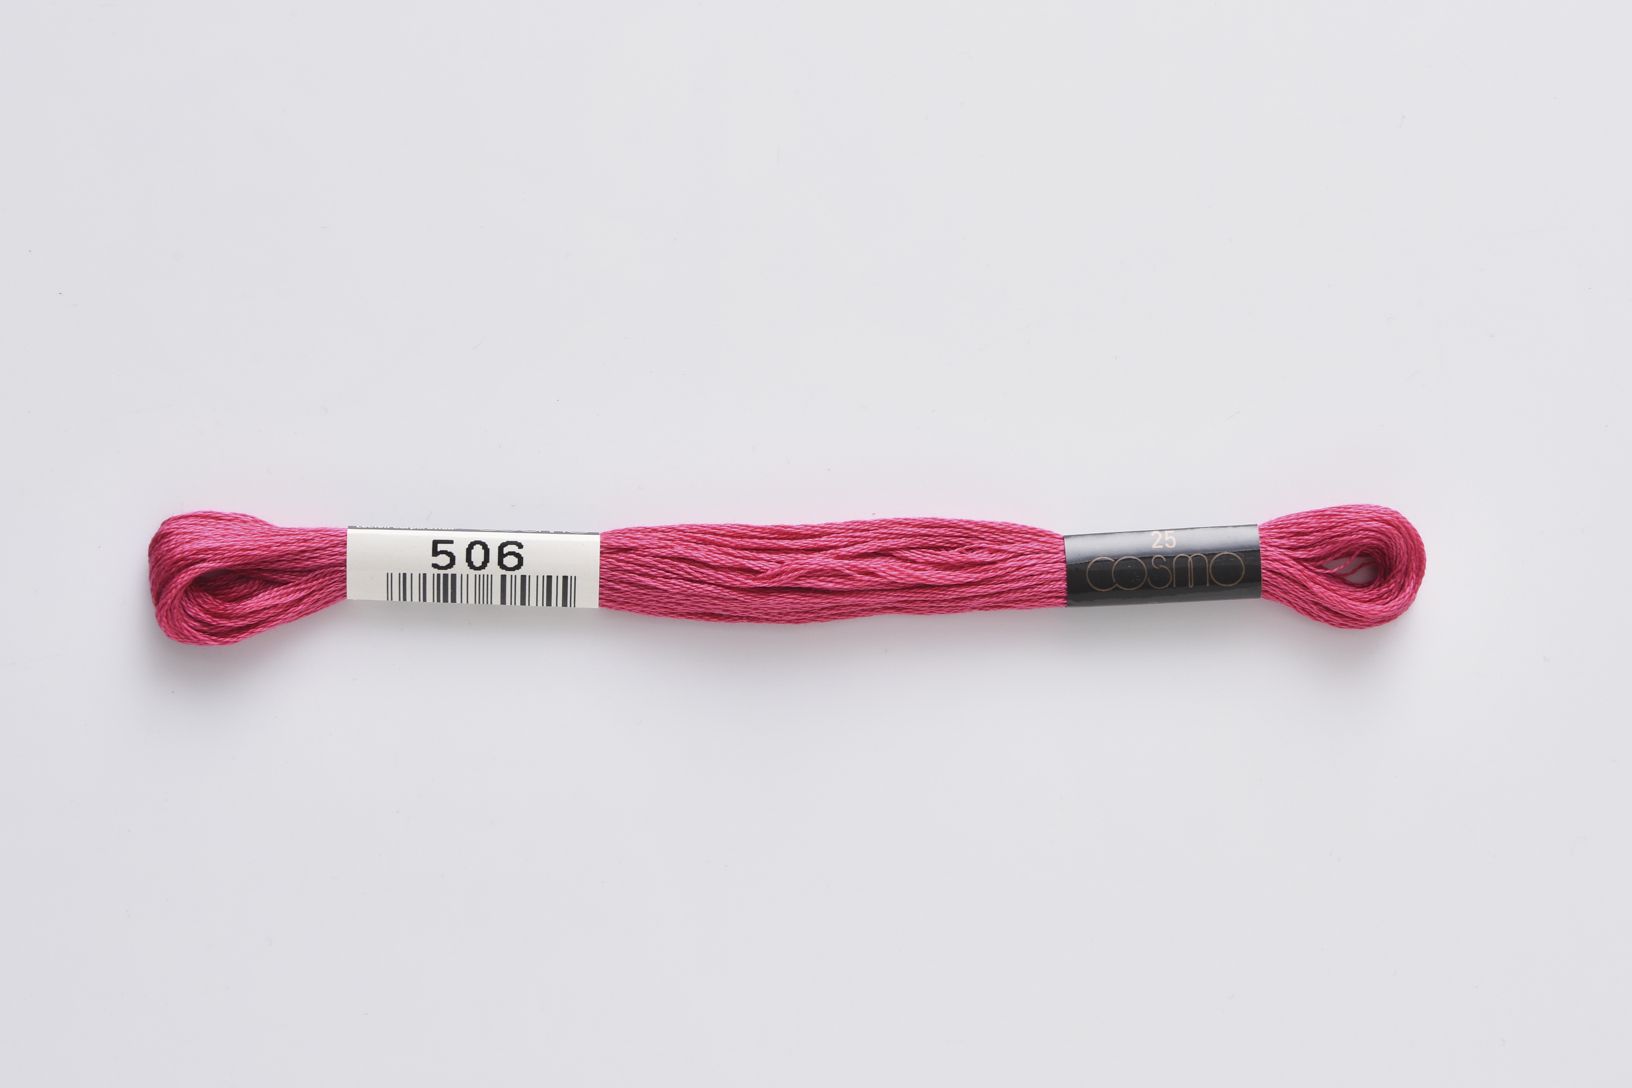 ■ COSMO #25 刺しゅう糸 ■ ◆25番刺しゅう糸　506番◆　 LECIEN がコスモ刺しゅう糸の取り扱いを始めたのは1950年。 当初は195色展開でしたが、より多くの人を魅了する配色を求め、現在では500色の色数を手掛けるようになりました。原料・製法・品質にこだわり、シルクのように輝く光沢に、ソフトな風合い、そして美しい発色を持つコスモ刺しゅう糸は日本国内にとどまらず、欧米をはじめオーストラリア、台湾など世界中の方に愛され、使用されています。 色あせ色落ちしにくい上品な光沢、匠の技術による美しい発色、プロも愛用する繊細なカラーバリエーションが魅力の手刺しゅう用糸（6本あま撚り）。 高級超長綿を使用しています。 ◆ネコポスは合計20本までご利用可能です。 　上記を超える場合は宅配便での配送になります。 　ネコポス、宅急便の詳細については以下を必ずご確認ください。 ◆在庫の都合上、メーカー発注が必要な場合があります。 ◆画像やモニターによって実際の色合いと異なる場合があります。 ◆ご購入数により配送料金が割増になる場合があります。その場合別途メールでご確認させていただきます。 ■ COSMO #25 刺しゅう糸 ■ ◆素材　　：綿100％　 ◆カラー　：506 ◆メーカー：ルシアン/lecien ◆こちらの商品ページは1本単位での販売です。 手芸の丸十はお客様の手作りのお時間を少しでも楽しいものにしていただけるよう、お手伝いさせていただきます。手芸用品 服飾用品 生地 毛糸 雑貨 ソーイング レシピ 編み図 パターン 刺しゅう 手作りキット レジン アクセサリー ぬいぐるみ 編みぐるみ 手づくり プレゼント ベビー用品 入園入学 オーガニック素材